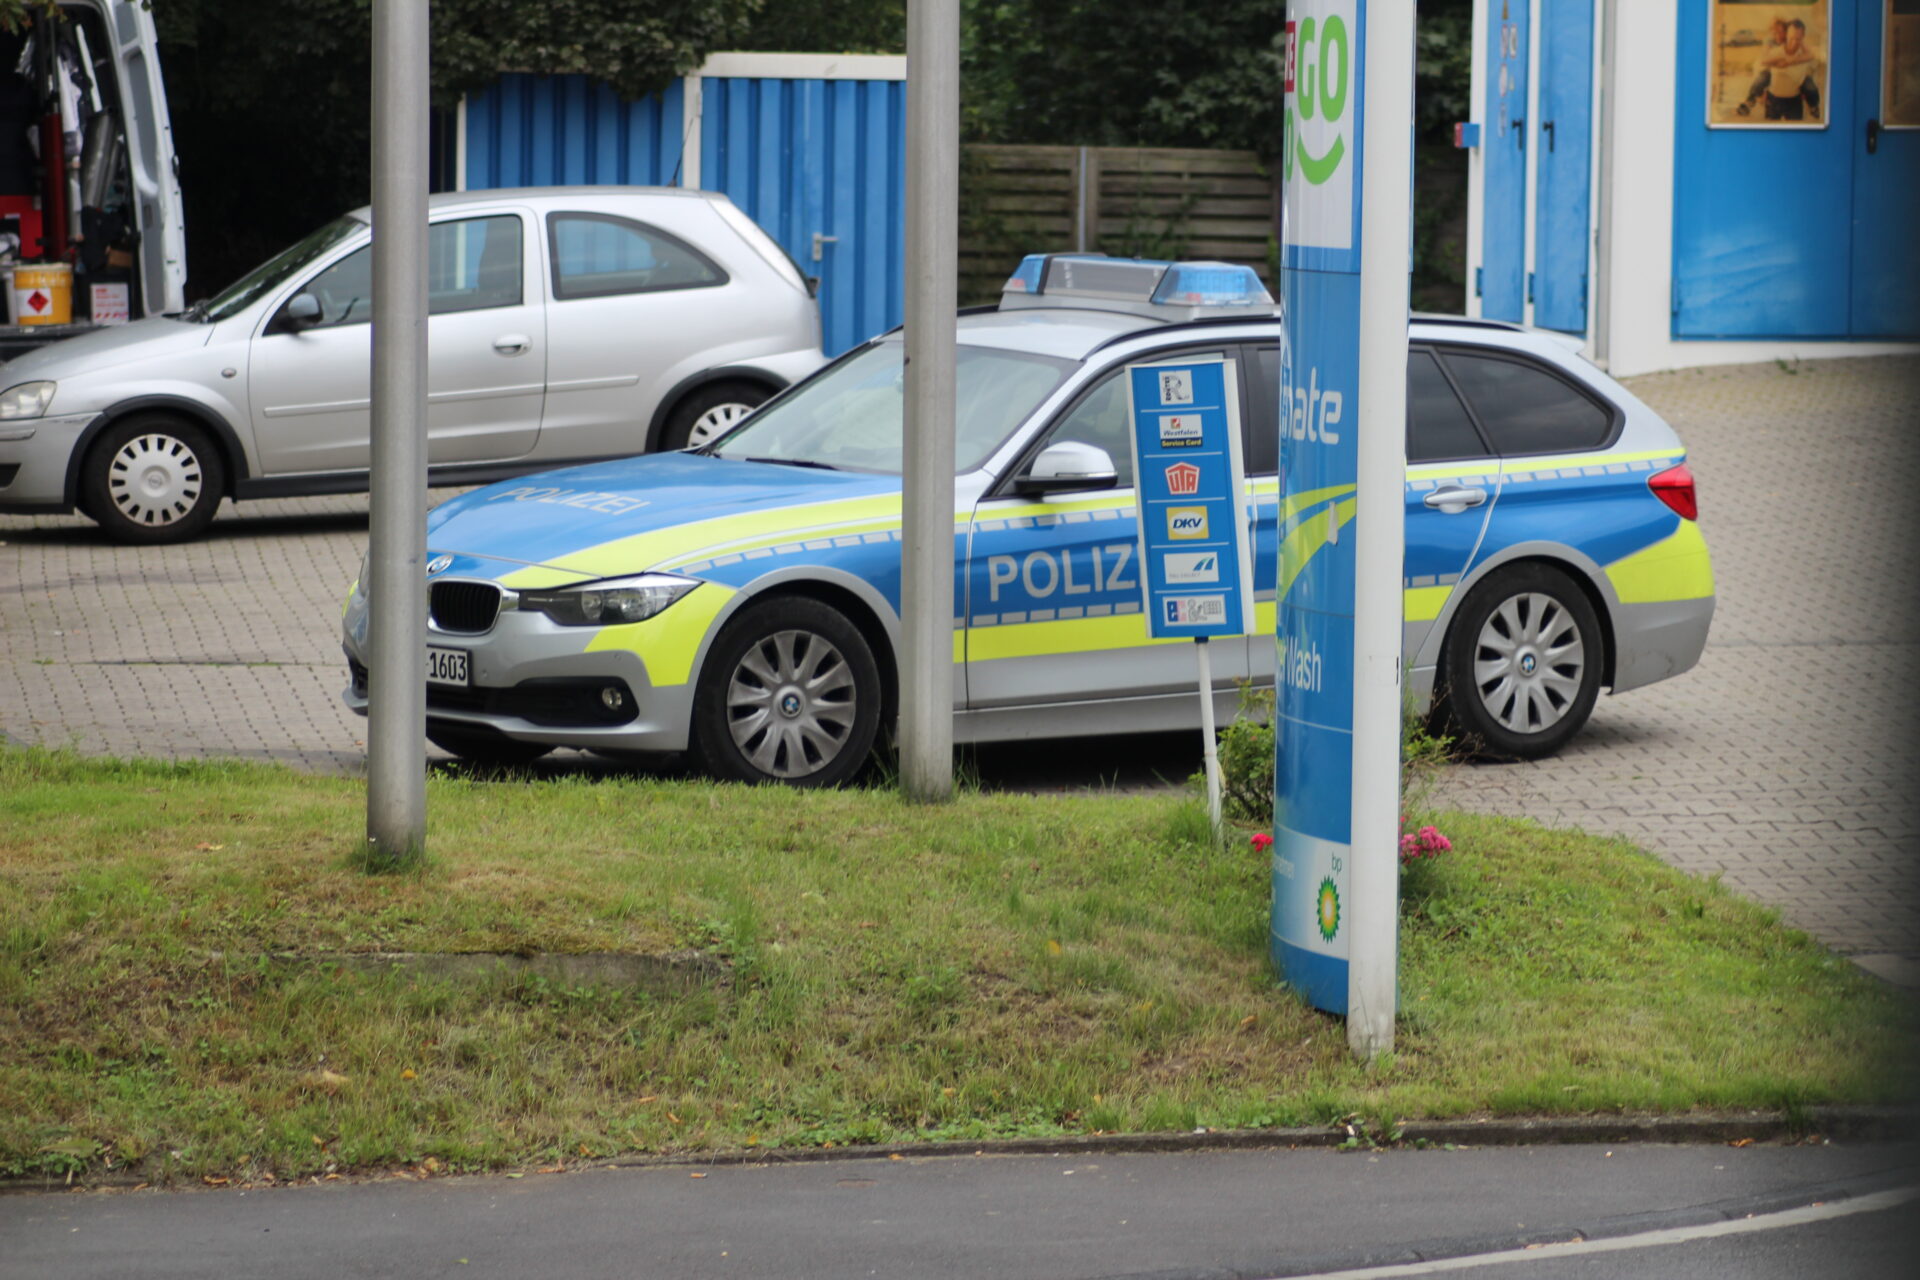 250 Liter Diesel aus Lkw entwendet: Polizei sucht Zeugen